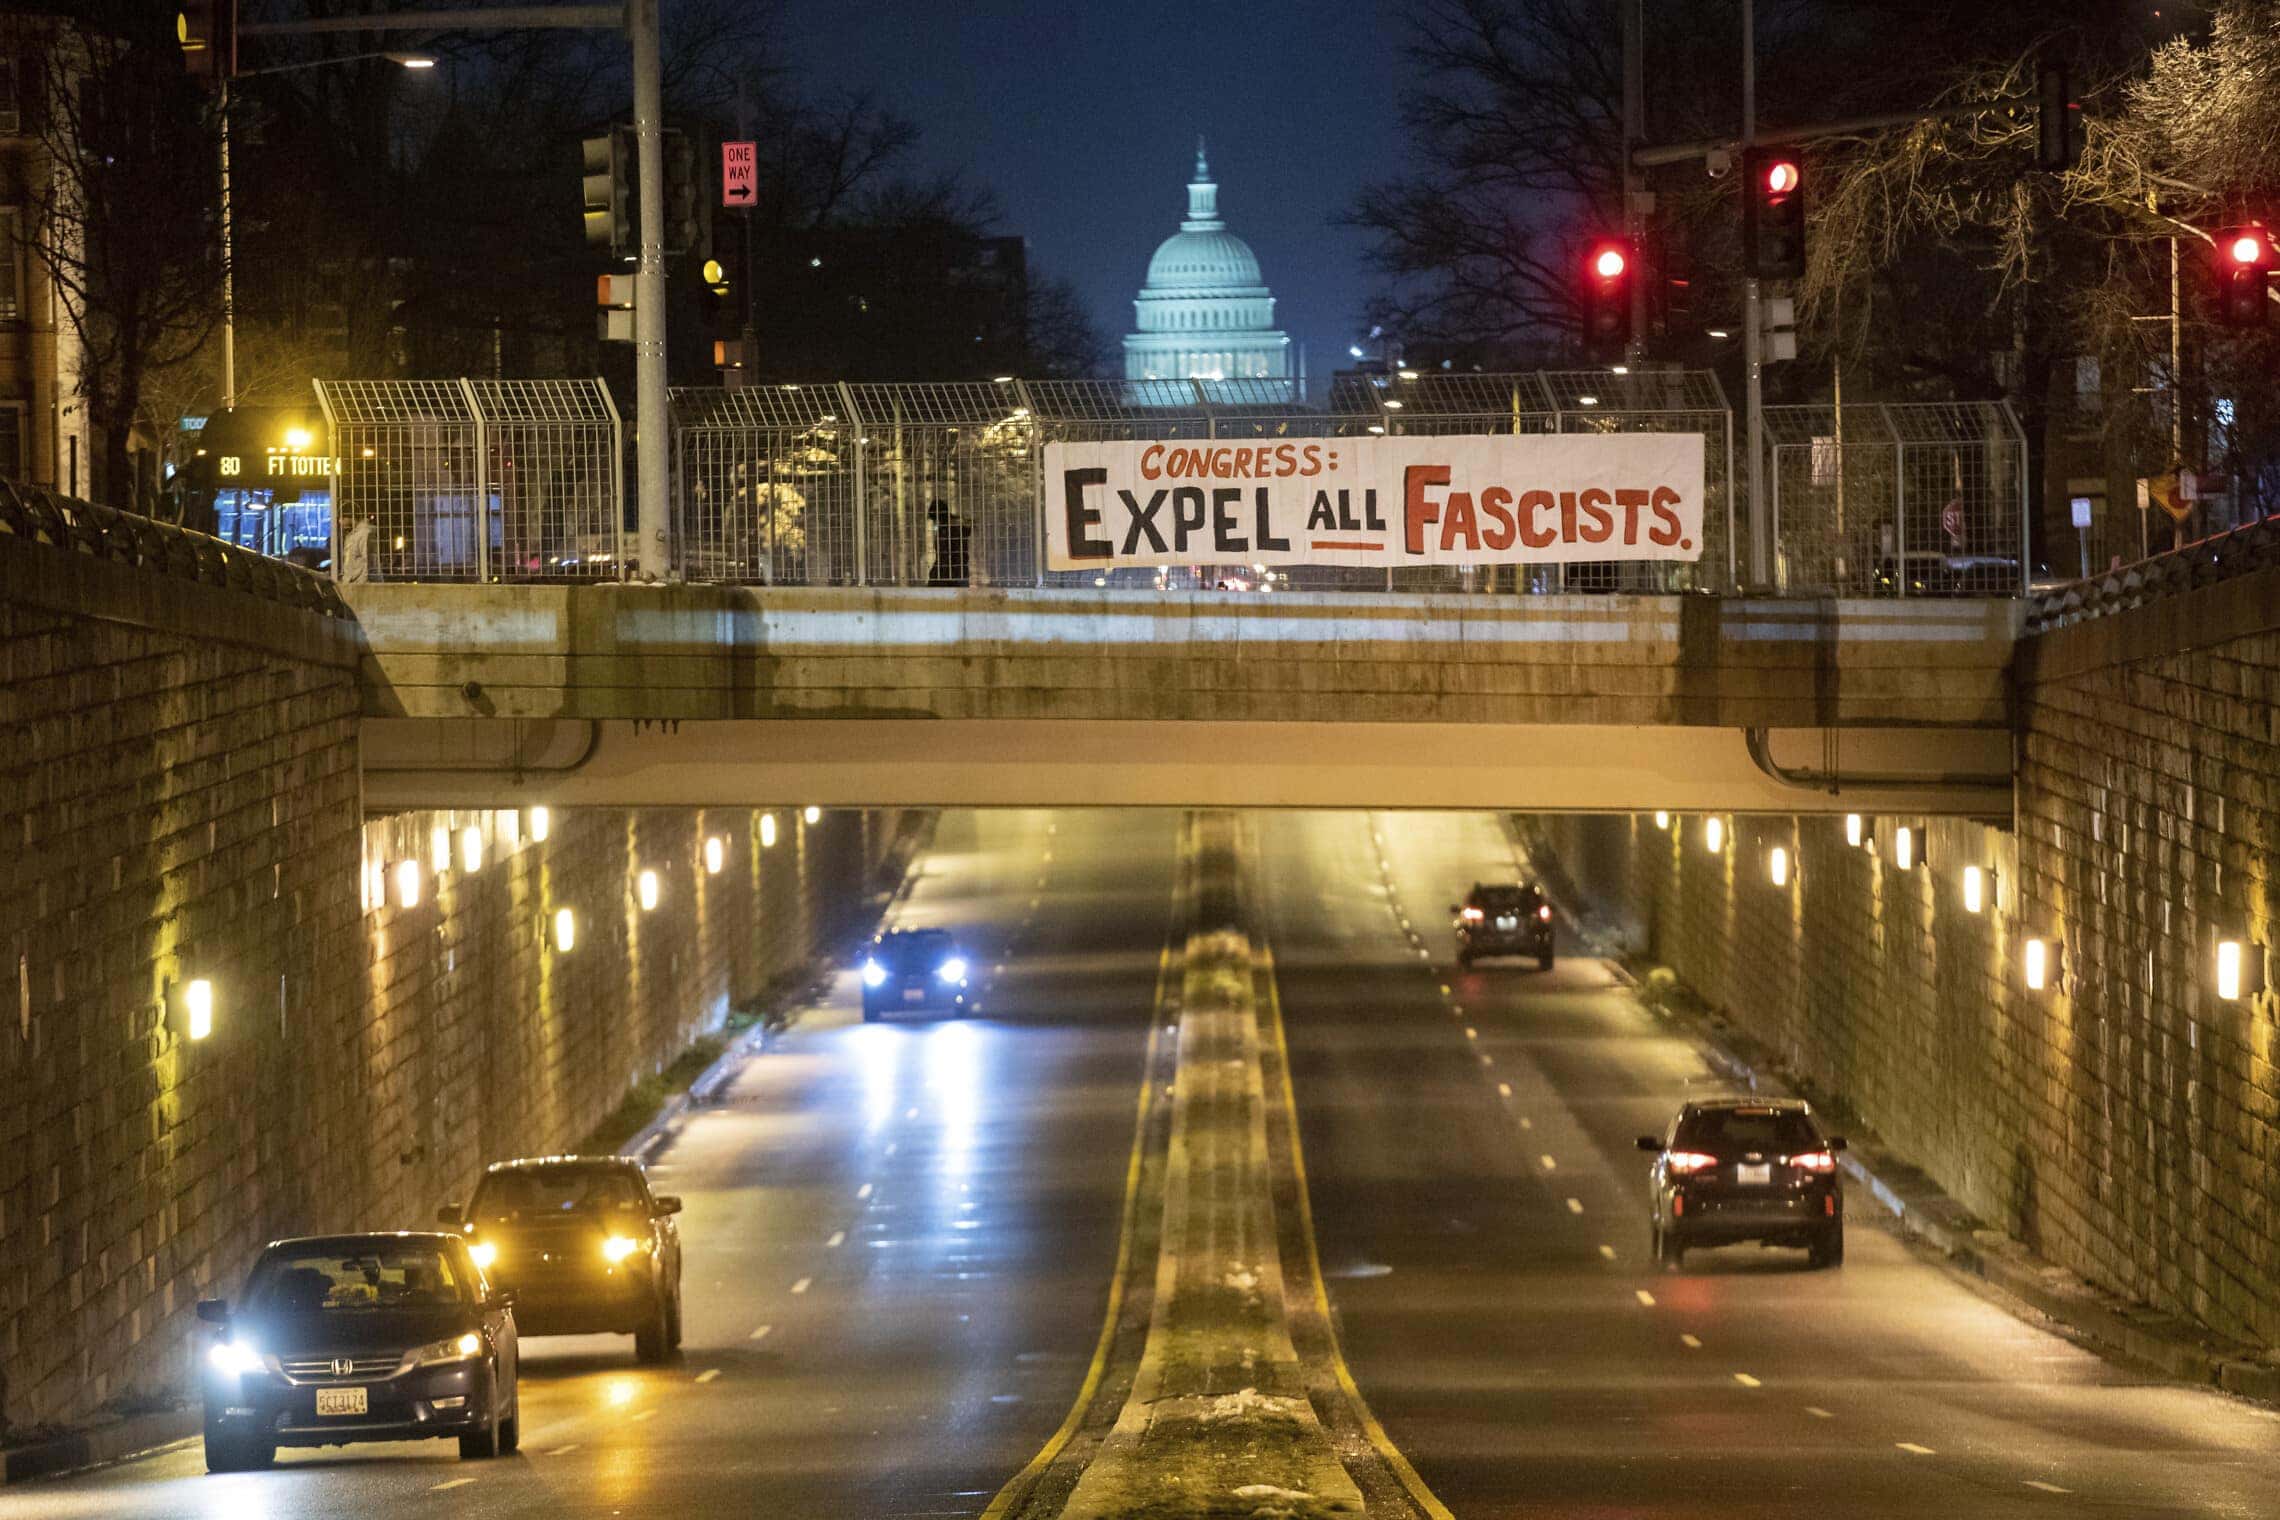 שלט שנתלה בדרך לגבעת הקפיטול הקורא לקונגרס &quot;לסלק את כל הפשיסטים&quot;, במלאת שנה לאירועי ההסתערות על הקפיטול. 5 בינואר 2022 (צילום: AP Photo/Amanda Andrade-Rhoades)